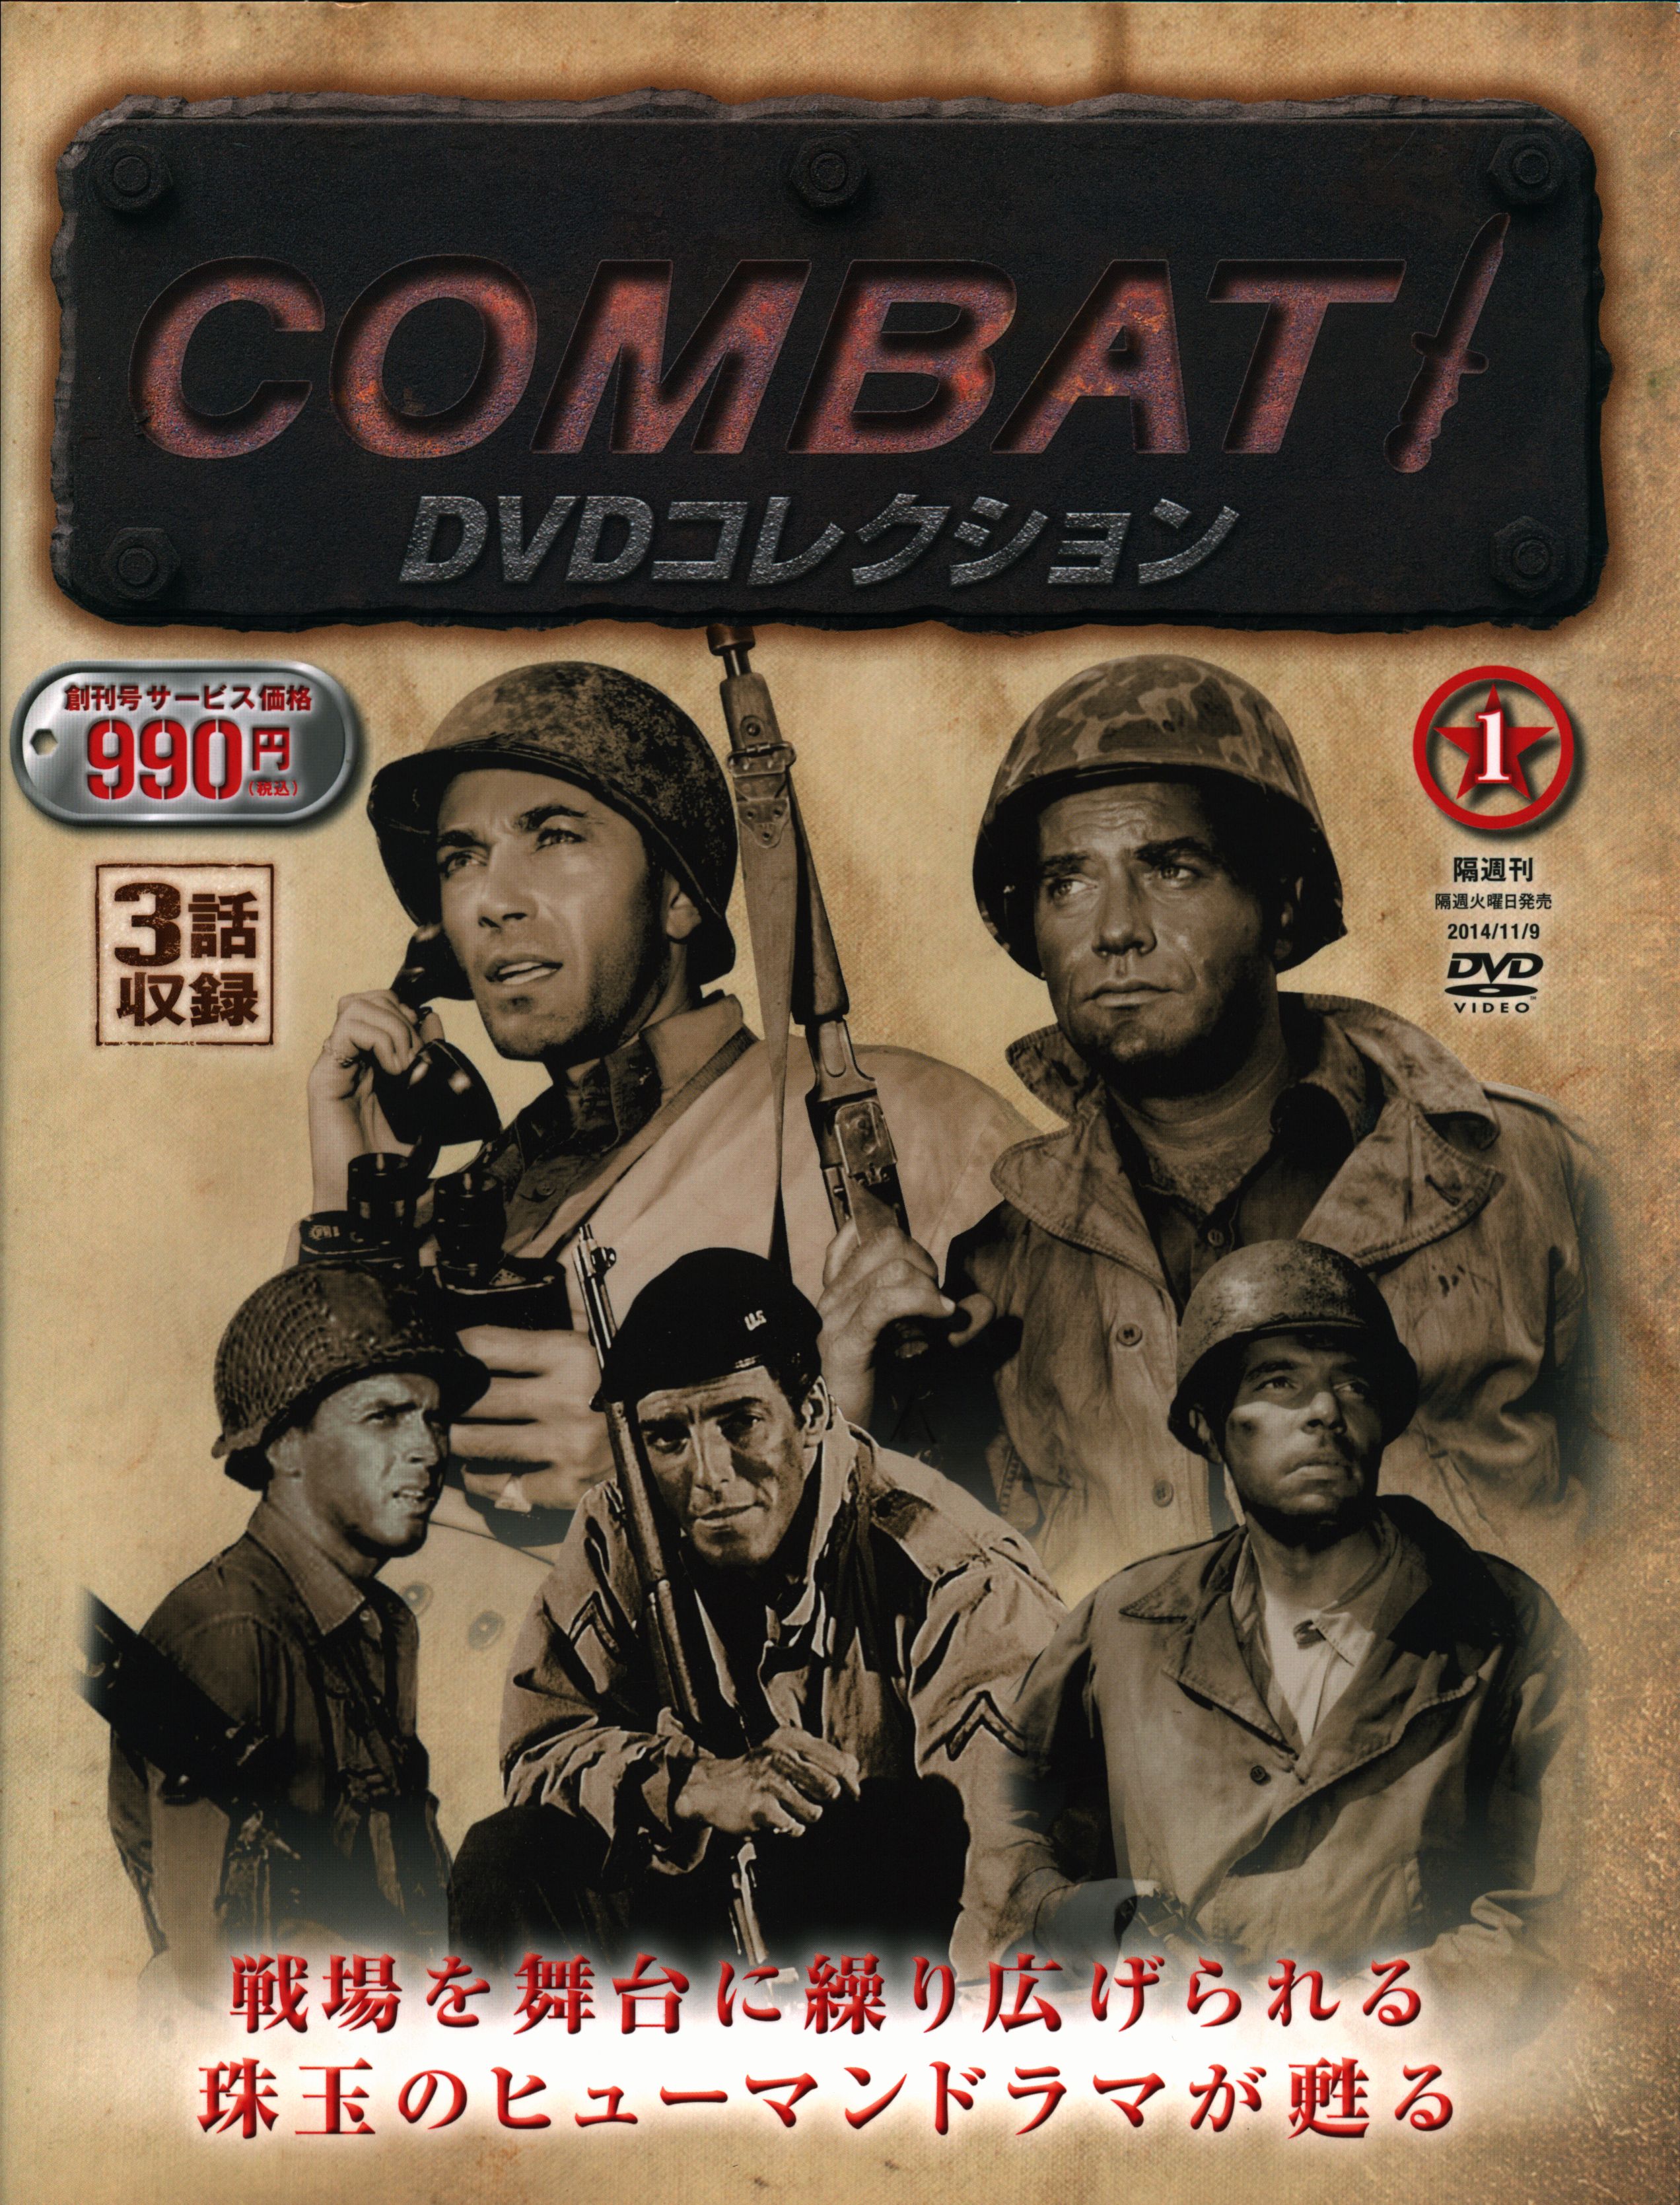 COMBAT コンバットDVDコレクション全50巻+1 - 外国映画